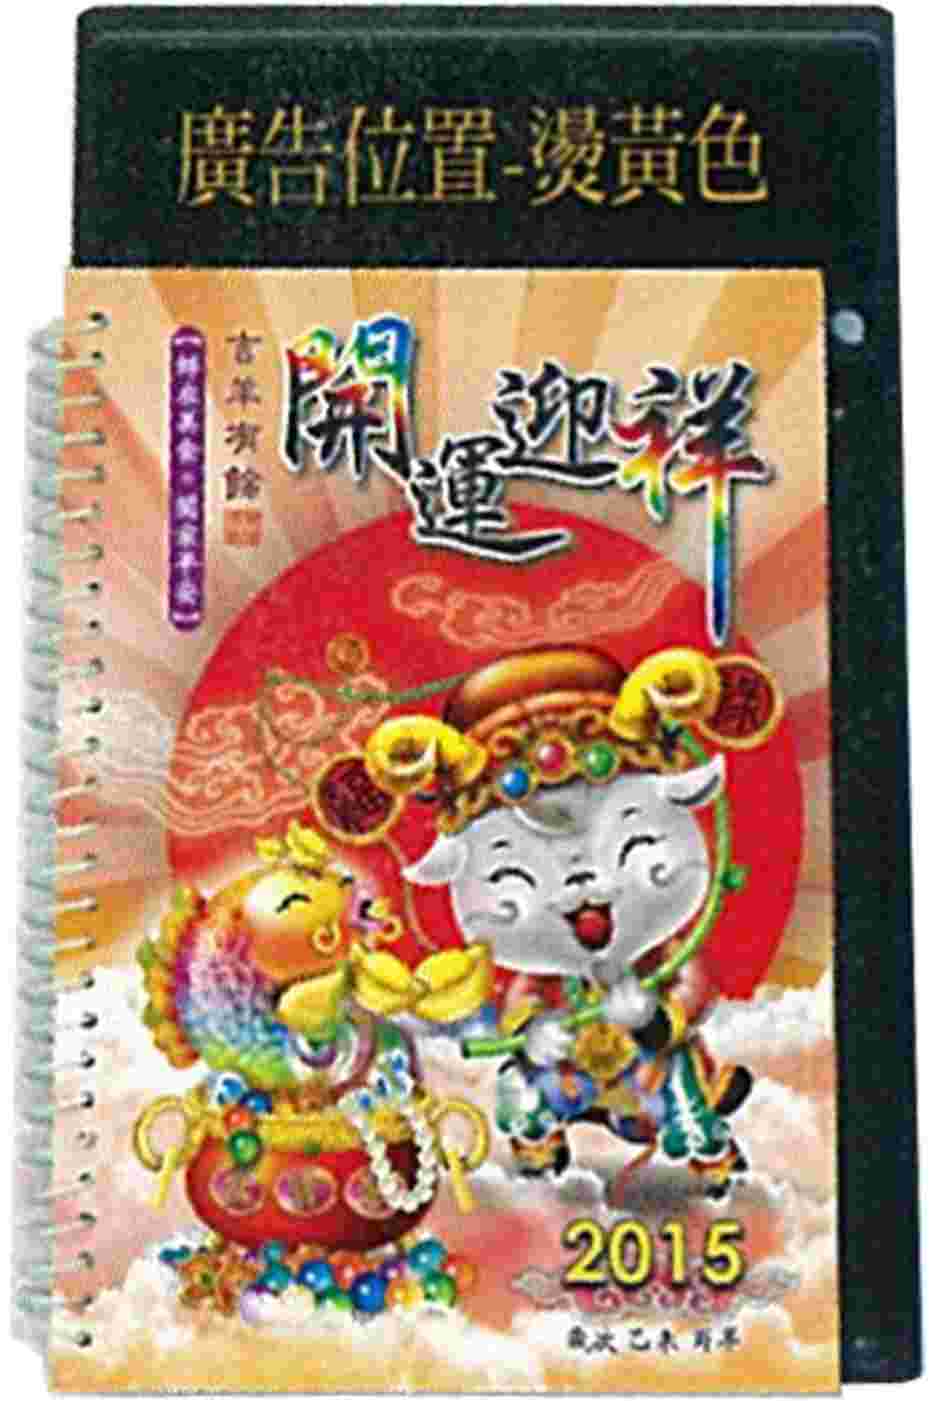 2015年中式桌曆 (開運迎祥)